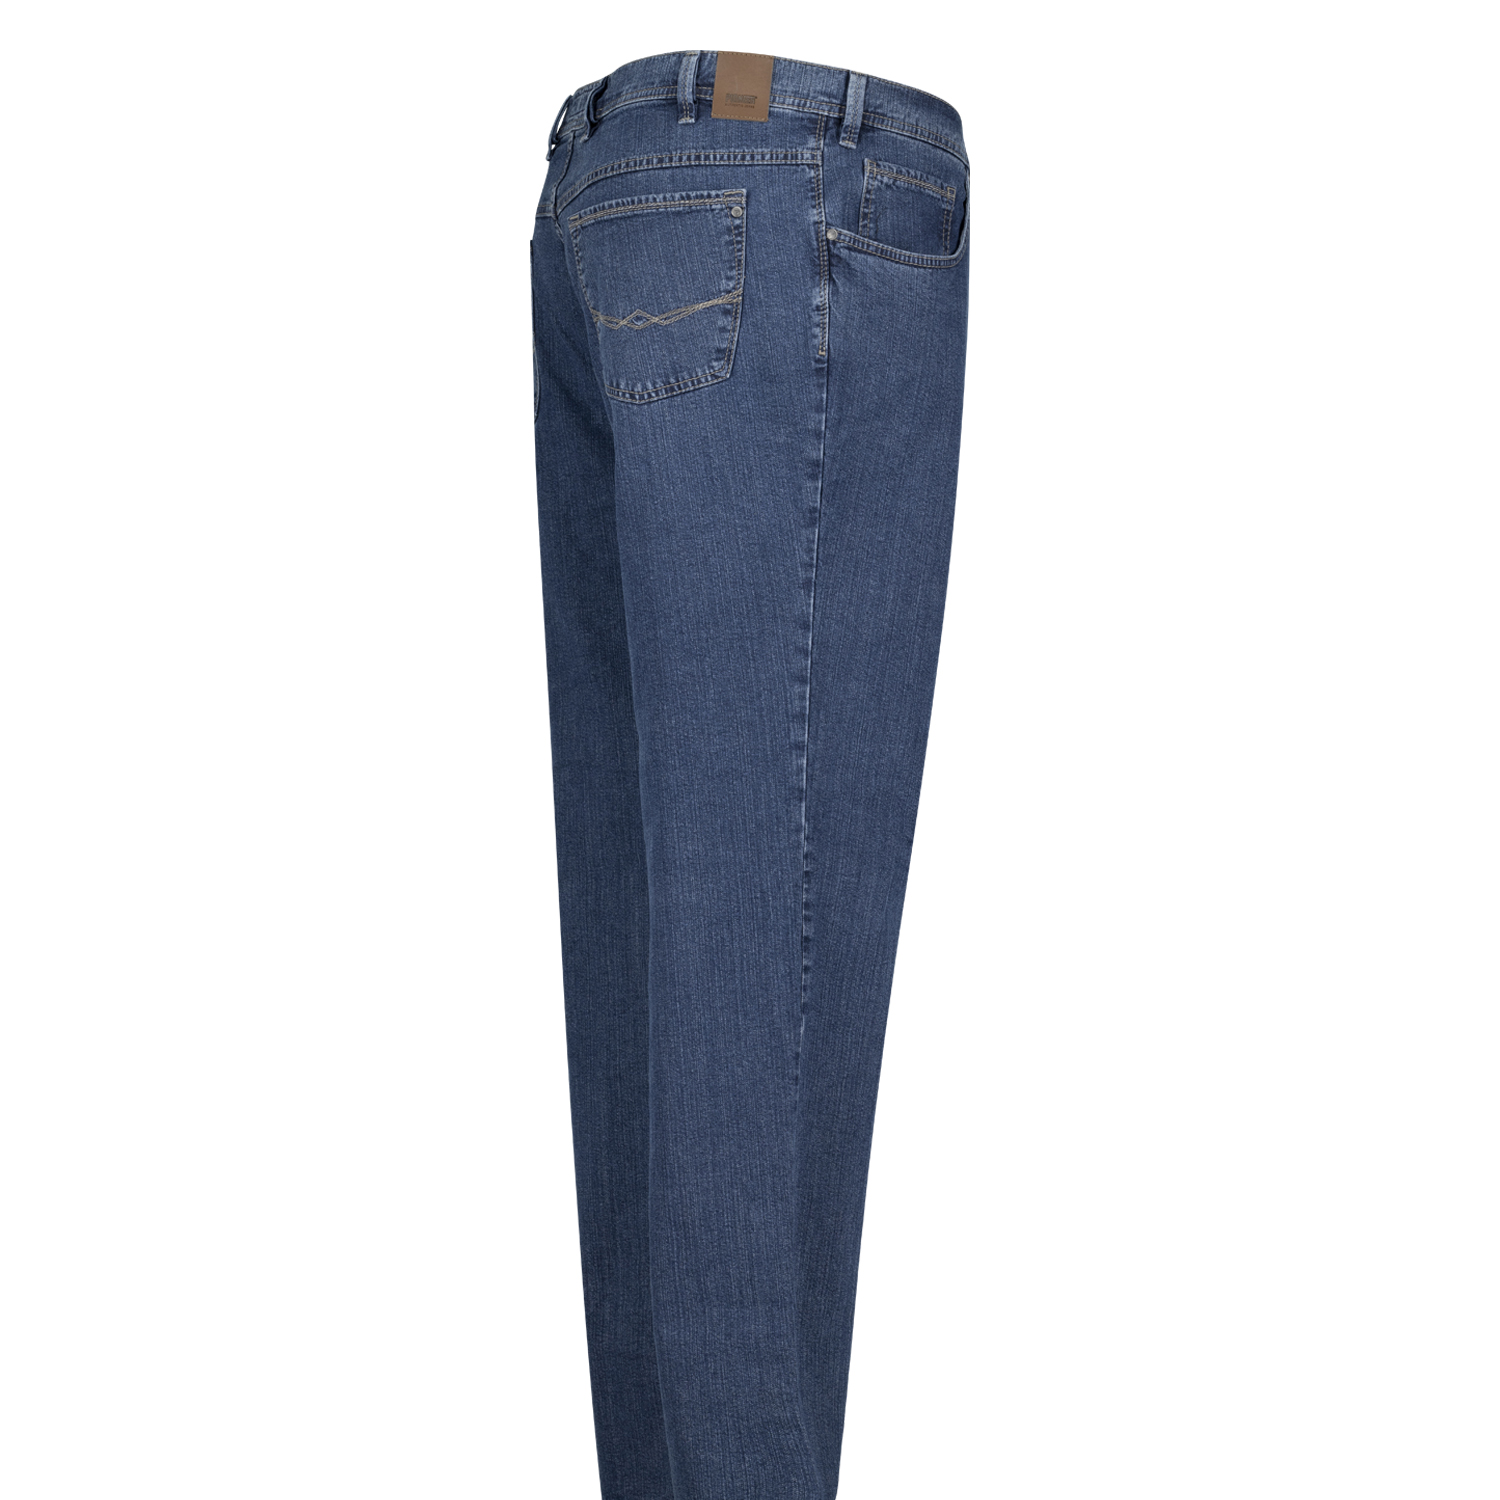 Herren Five Pocket Jeans Modell "Peter" von Pioneer Normalgrößen 56 - 74 blue stonewash